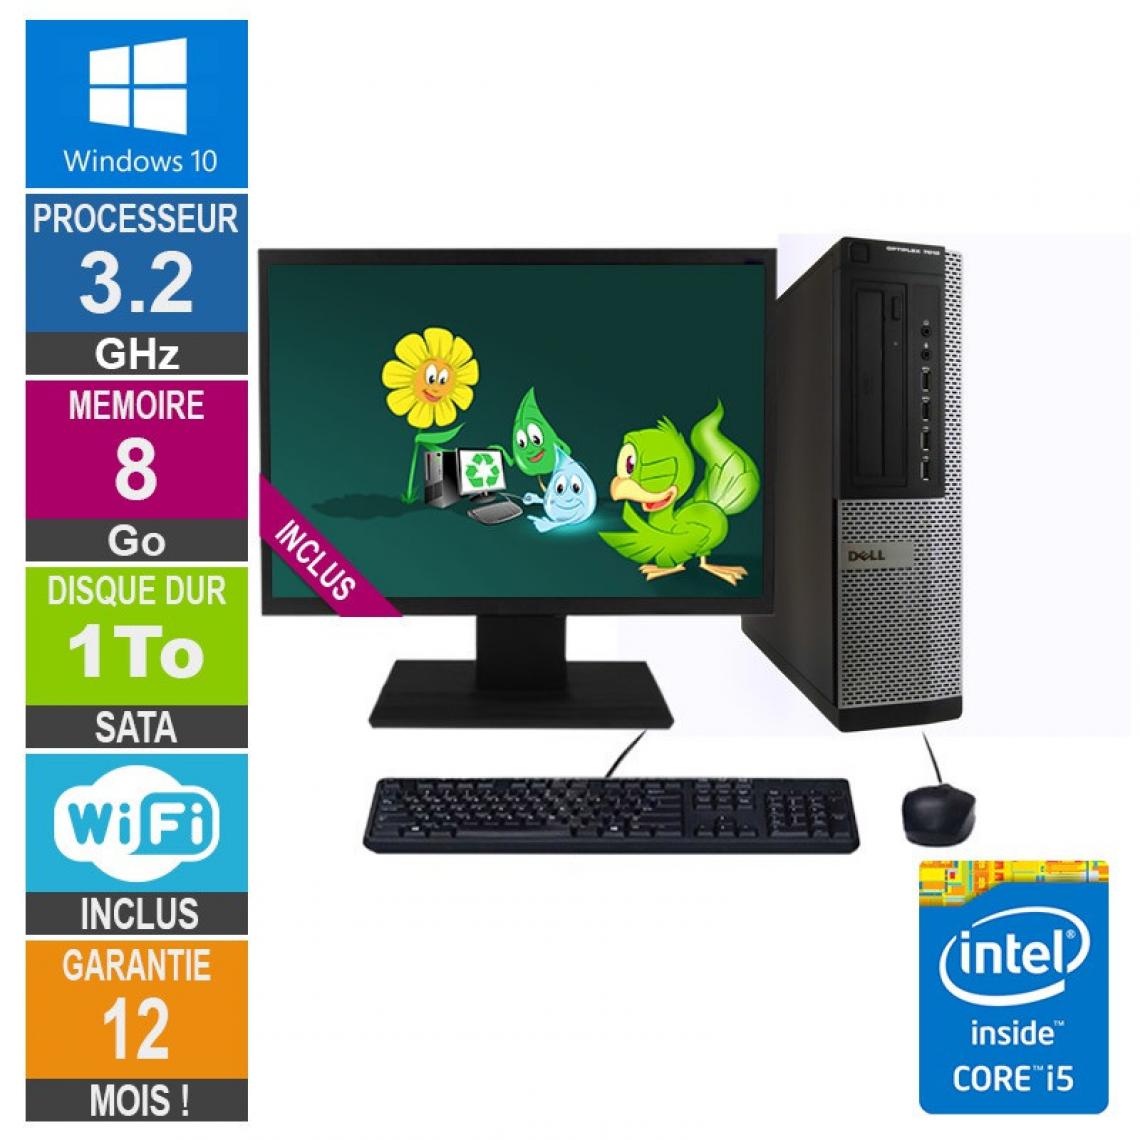 Dell - PC Dell Optiplex 7010 DT Core i5-3470 3.20GHz 8Go/1To Wifi W10 + Ecran 19 - PC Fixe